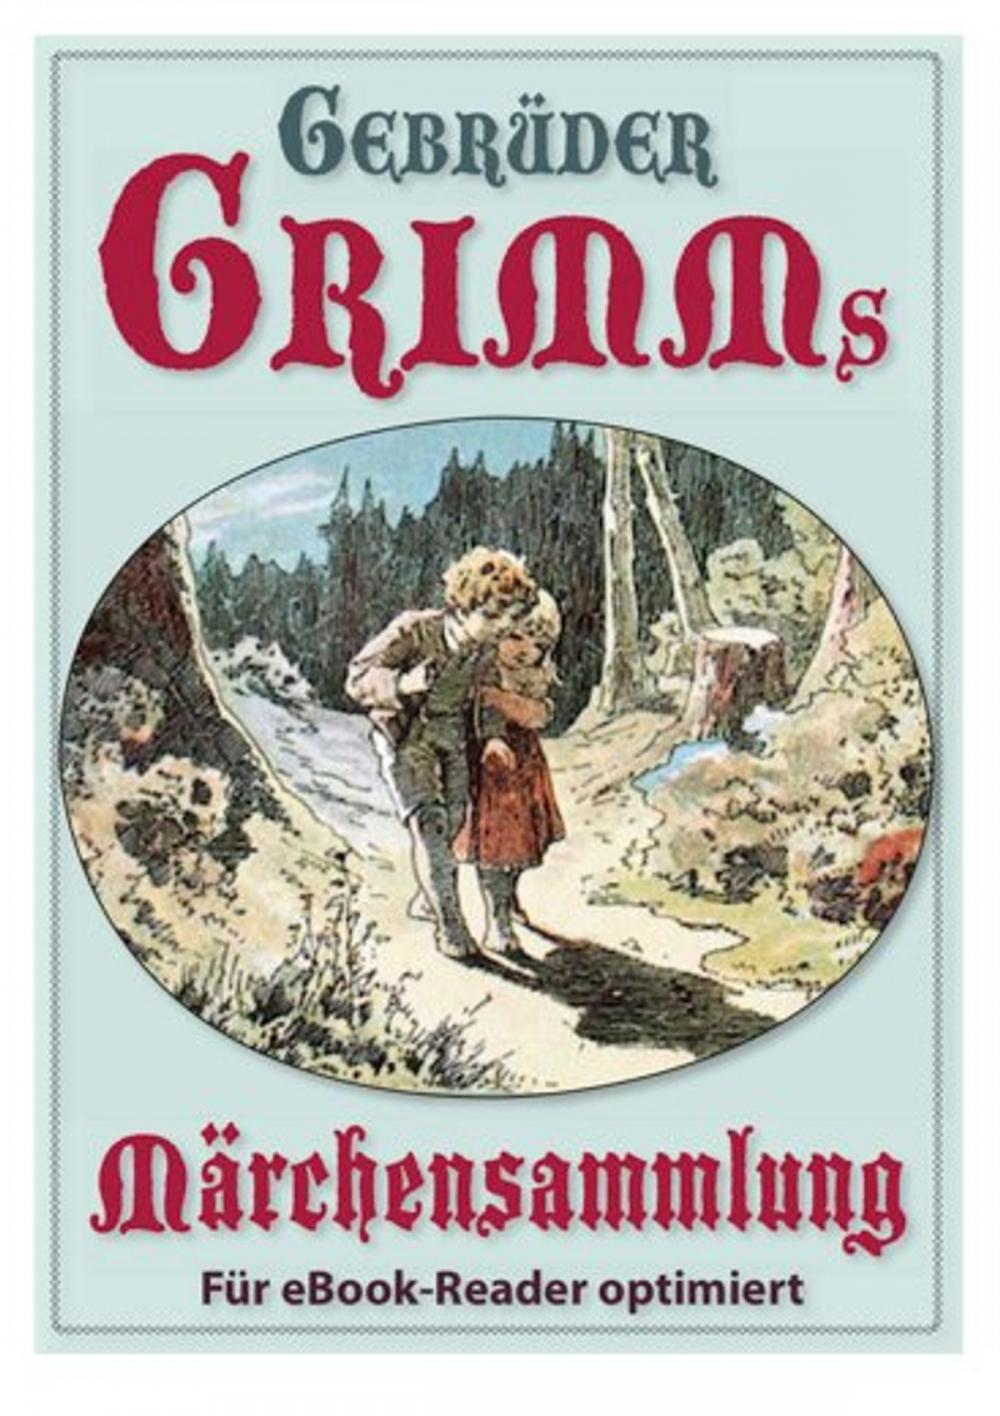 Big bigCover of Grimms Märchensammlung, reichhaltig illustriert und für eBook-Reader vollständig überarbeitet